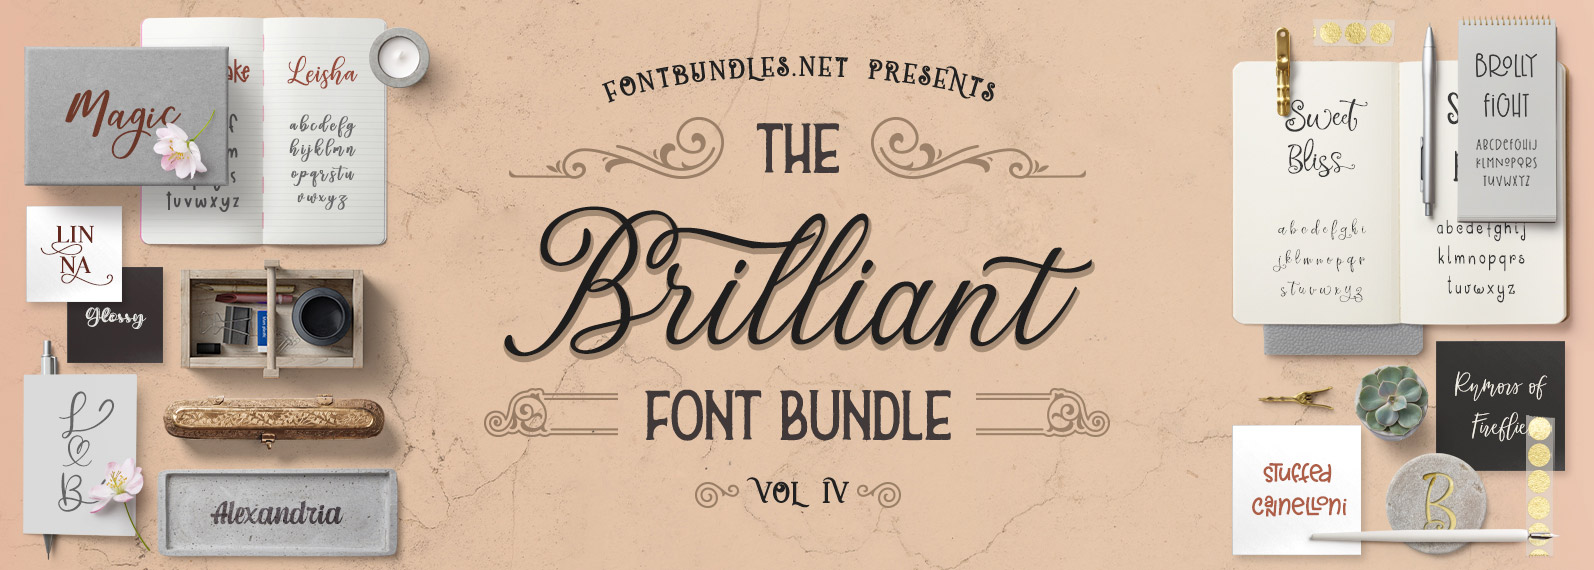 The Brilliant Font Bundle IV Cover